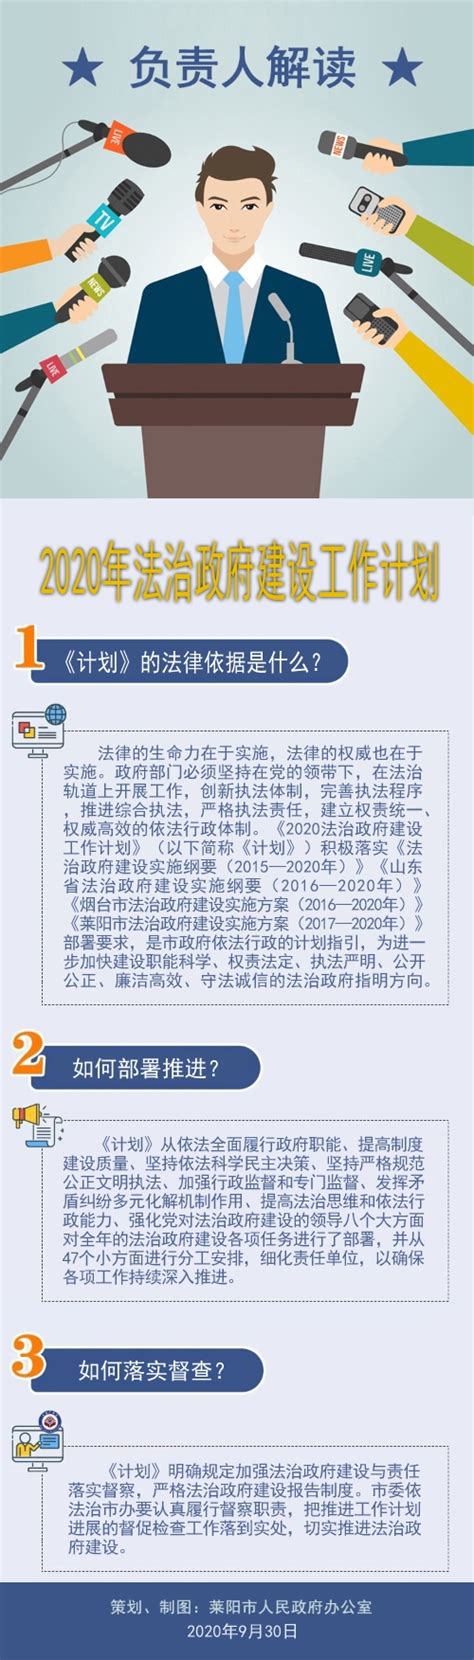 莱阳市政府门户网站 政策图解 【一图读懂】《2020年法治政府建设工作计划》